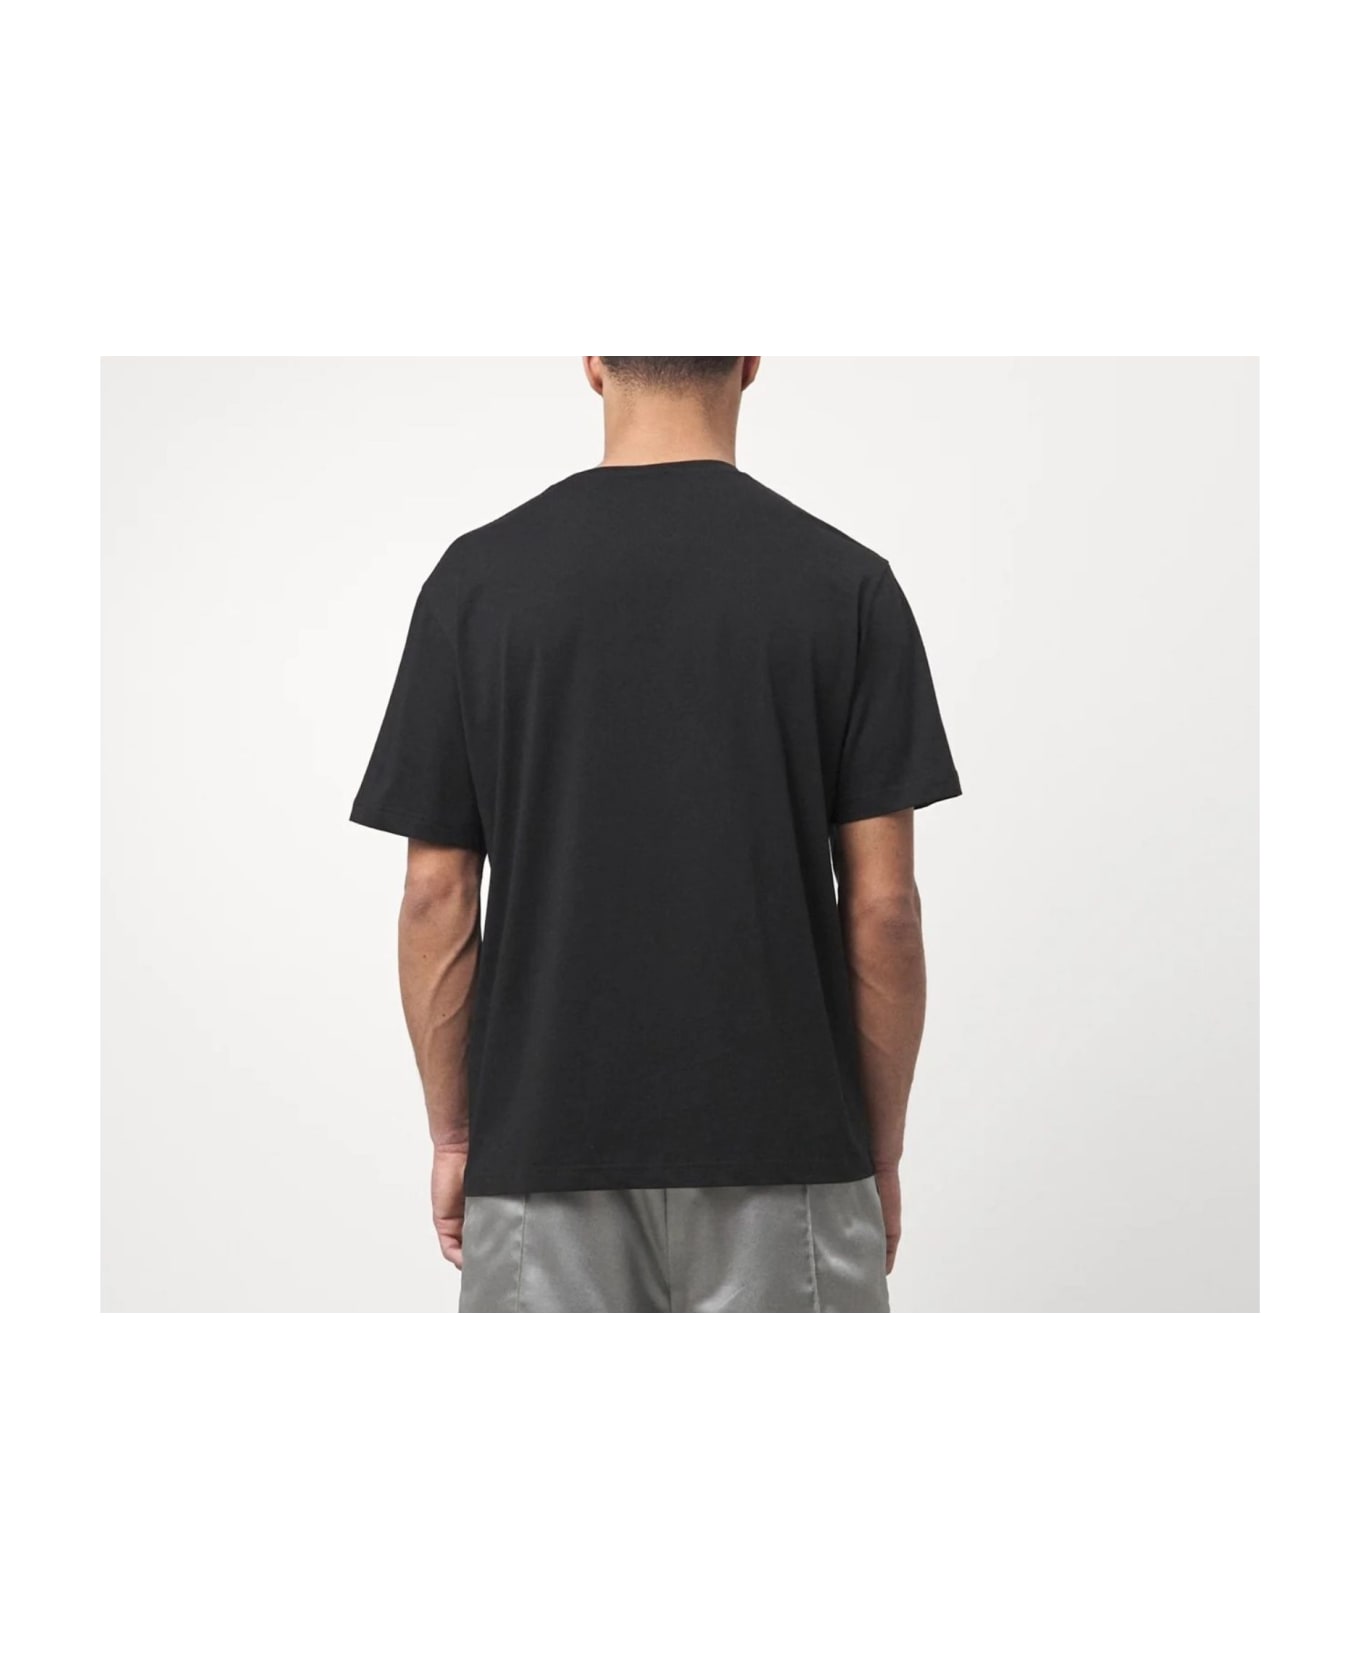 Just Cavalli T-shirt - Black シャツ